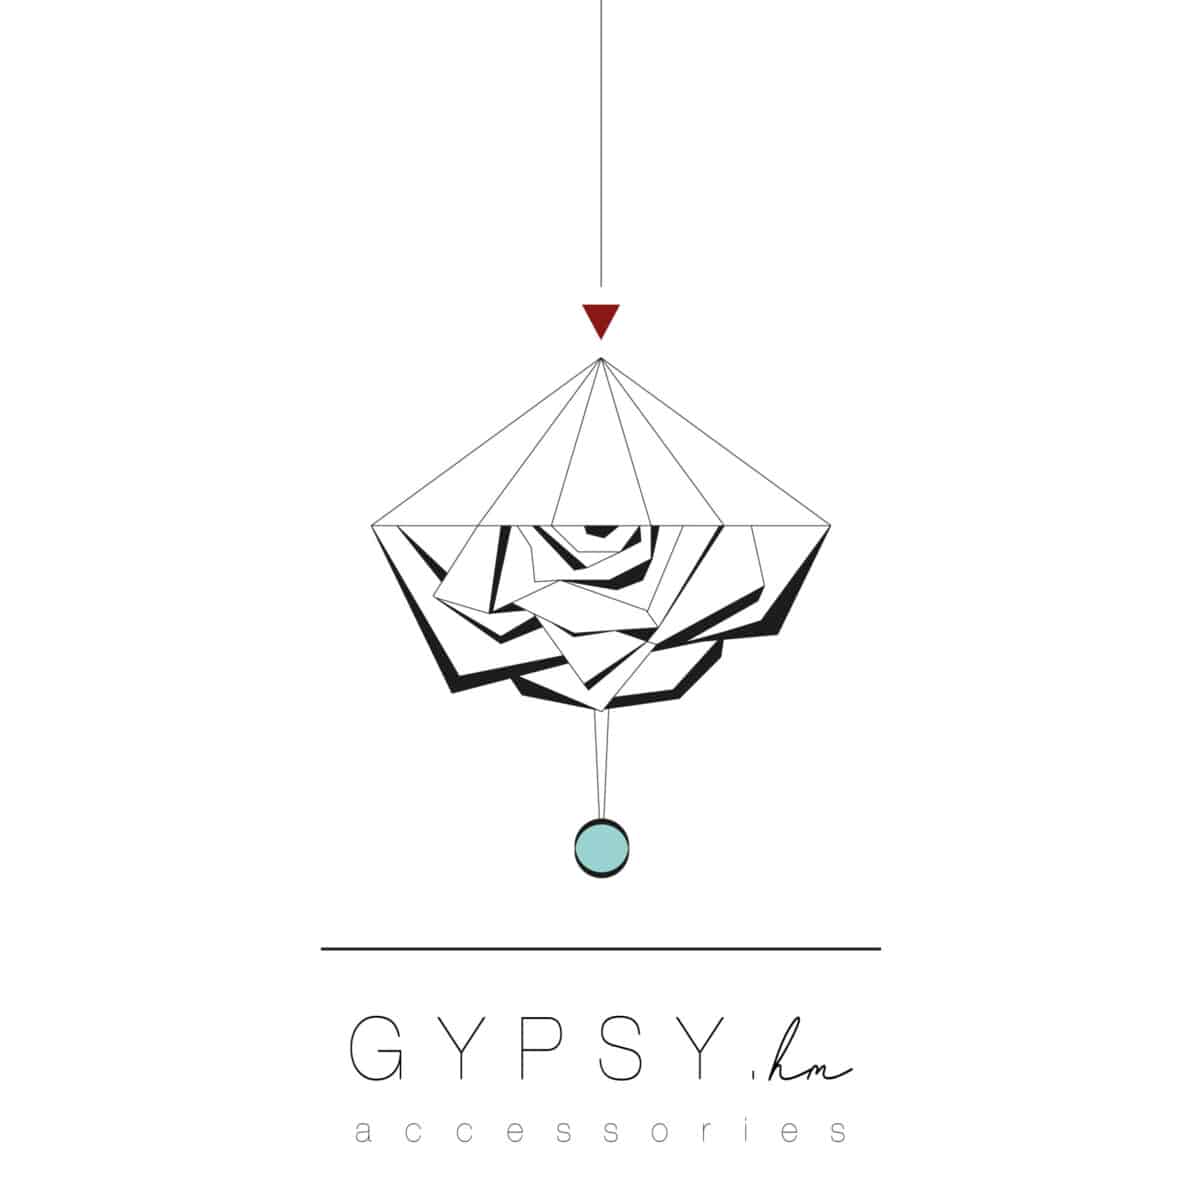 Gypsy.hm Accessories